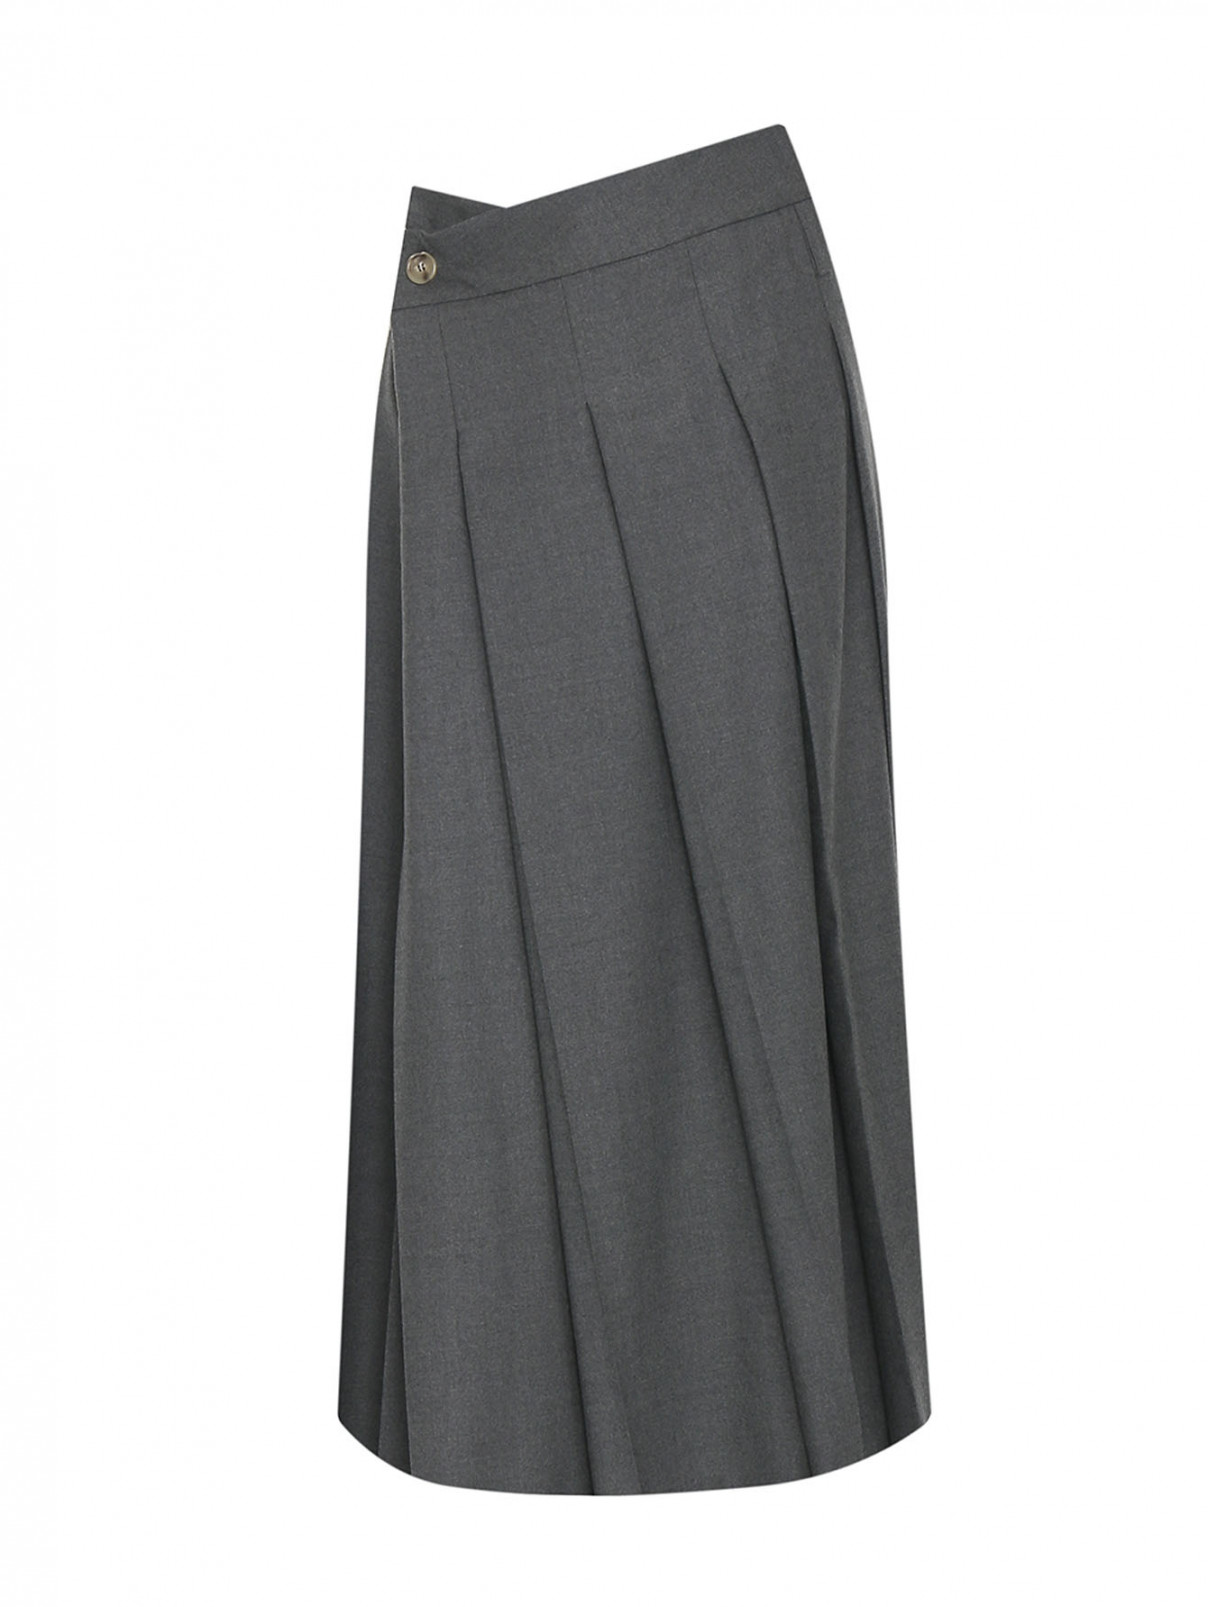 Плиссированная юбка из шерсти Sportmax  –  Общий вид  – Цвет:  Серый